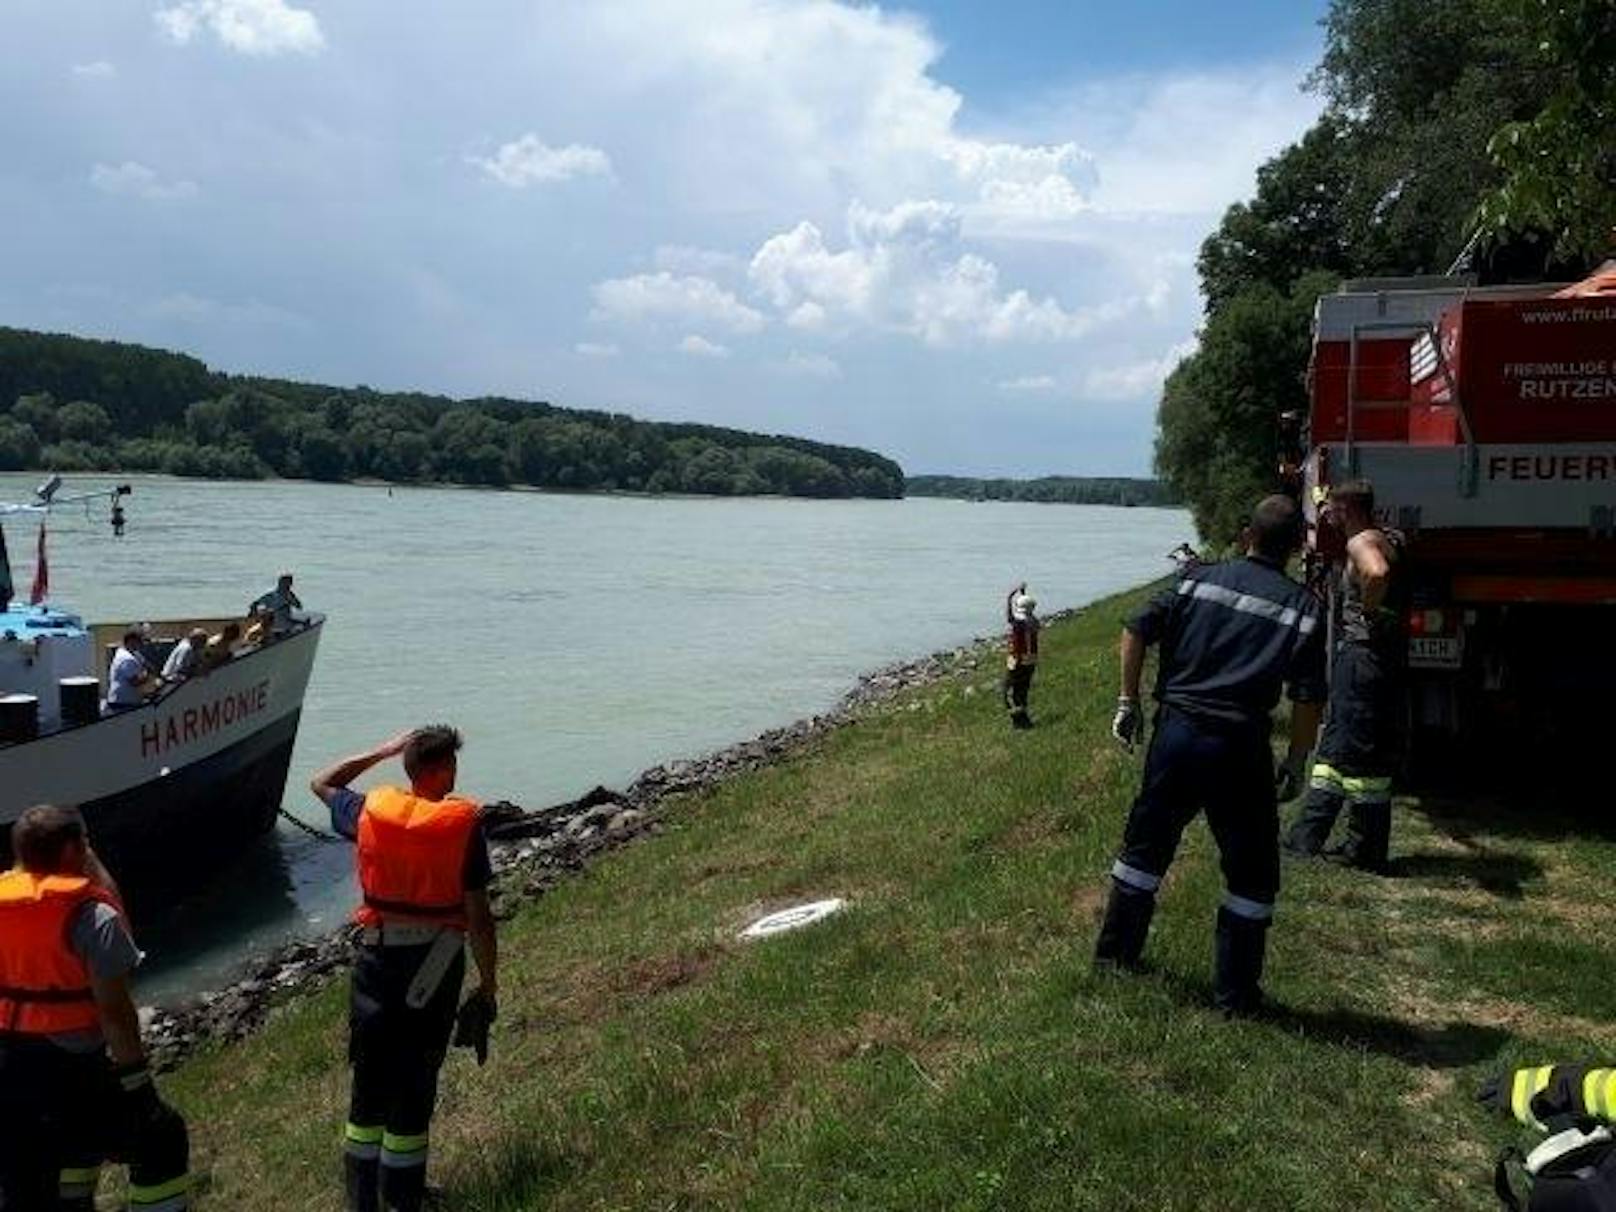 Ein Schiff dürfte seine Ankerkette in der Donau verloren haben, der Frachter "Harmonie" verfing sich und blieb hängen.